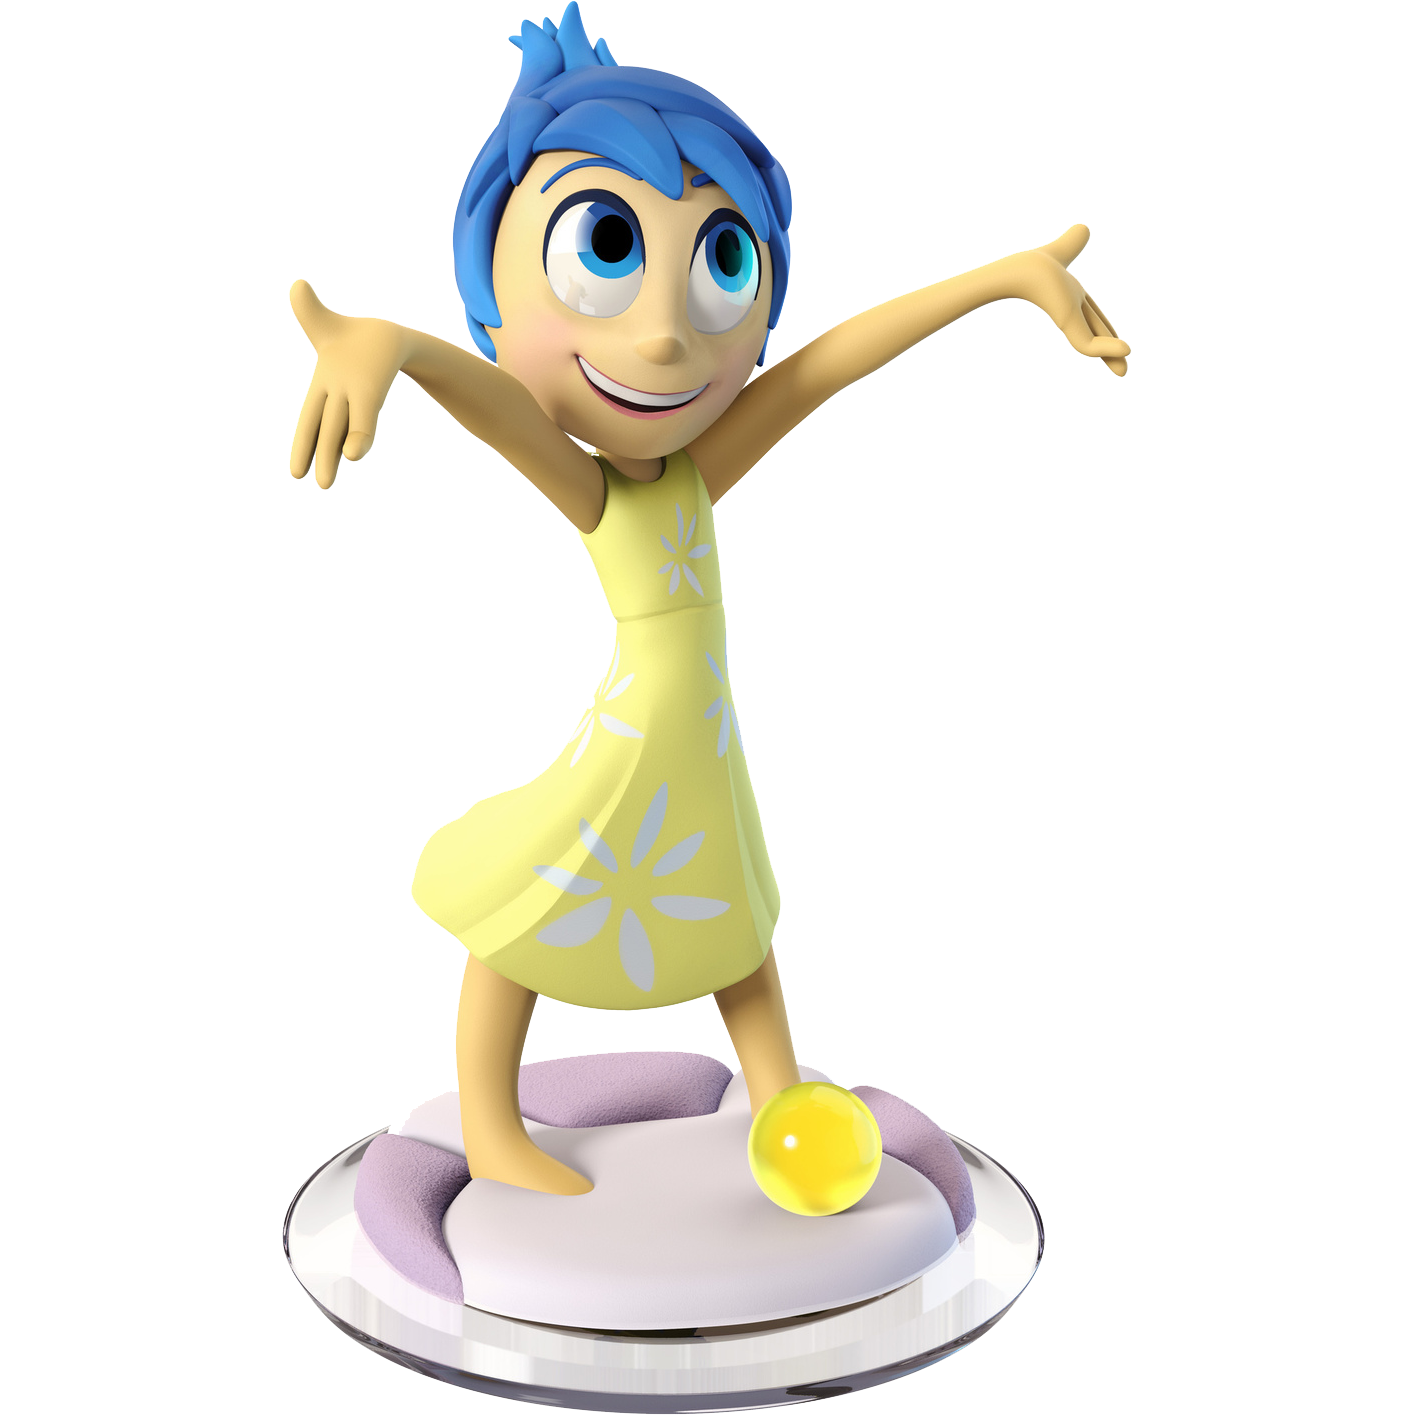 Disney Infinity 3.0 - Figurine Joie